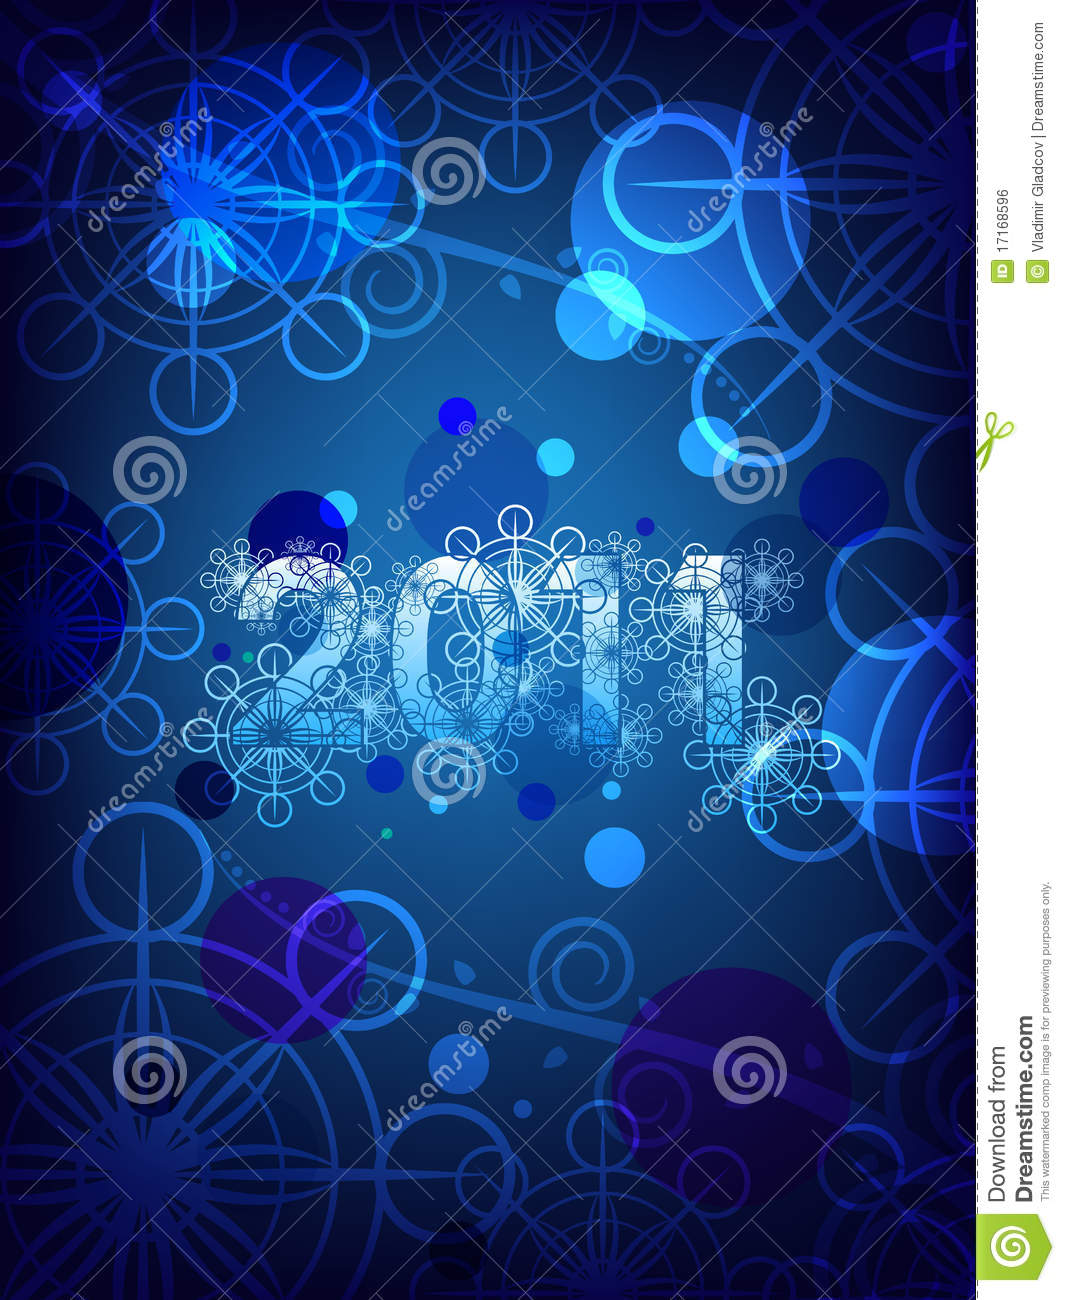 New Years Eve Desktop Wallpaper